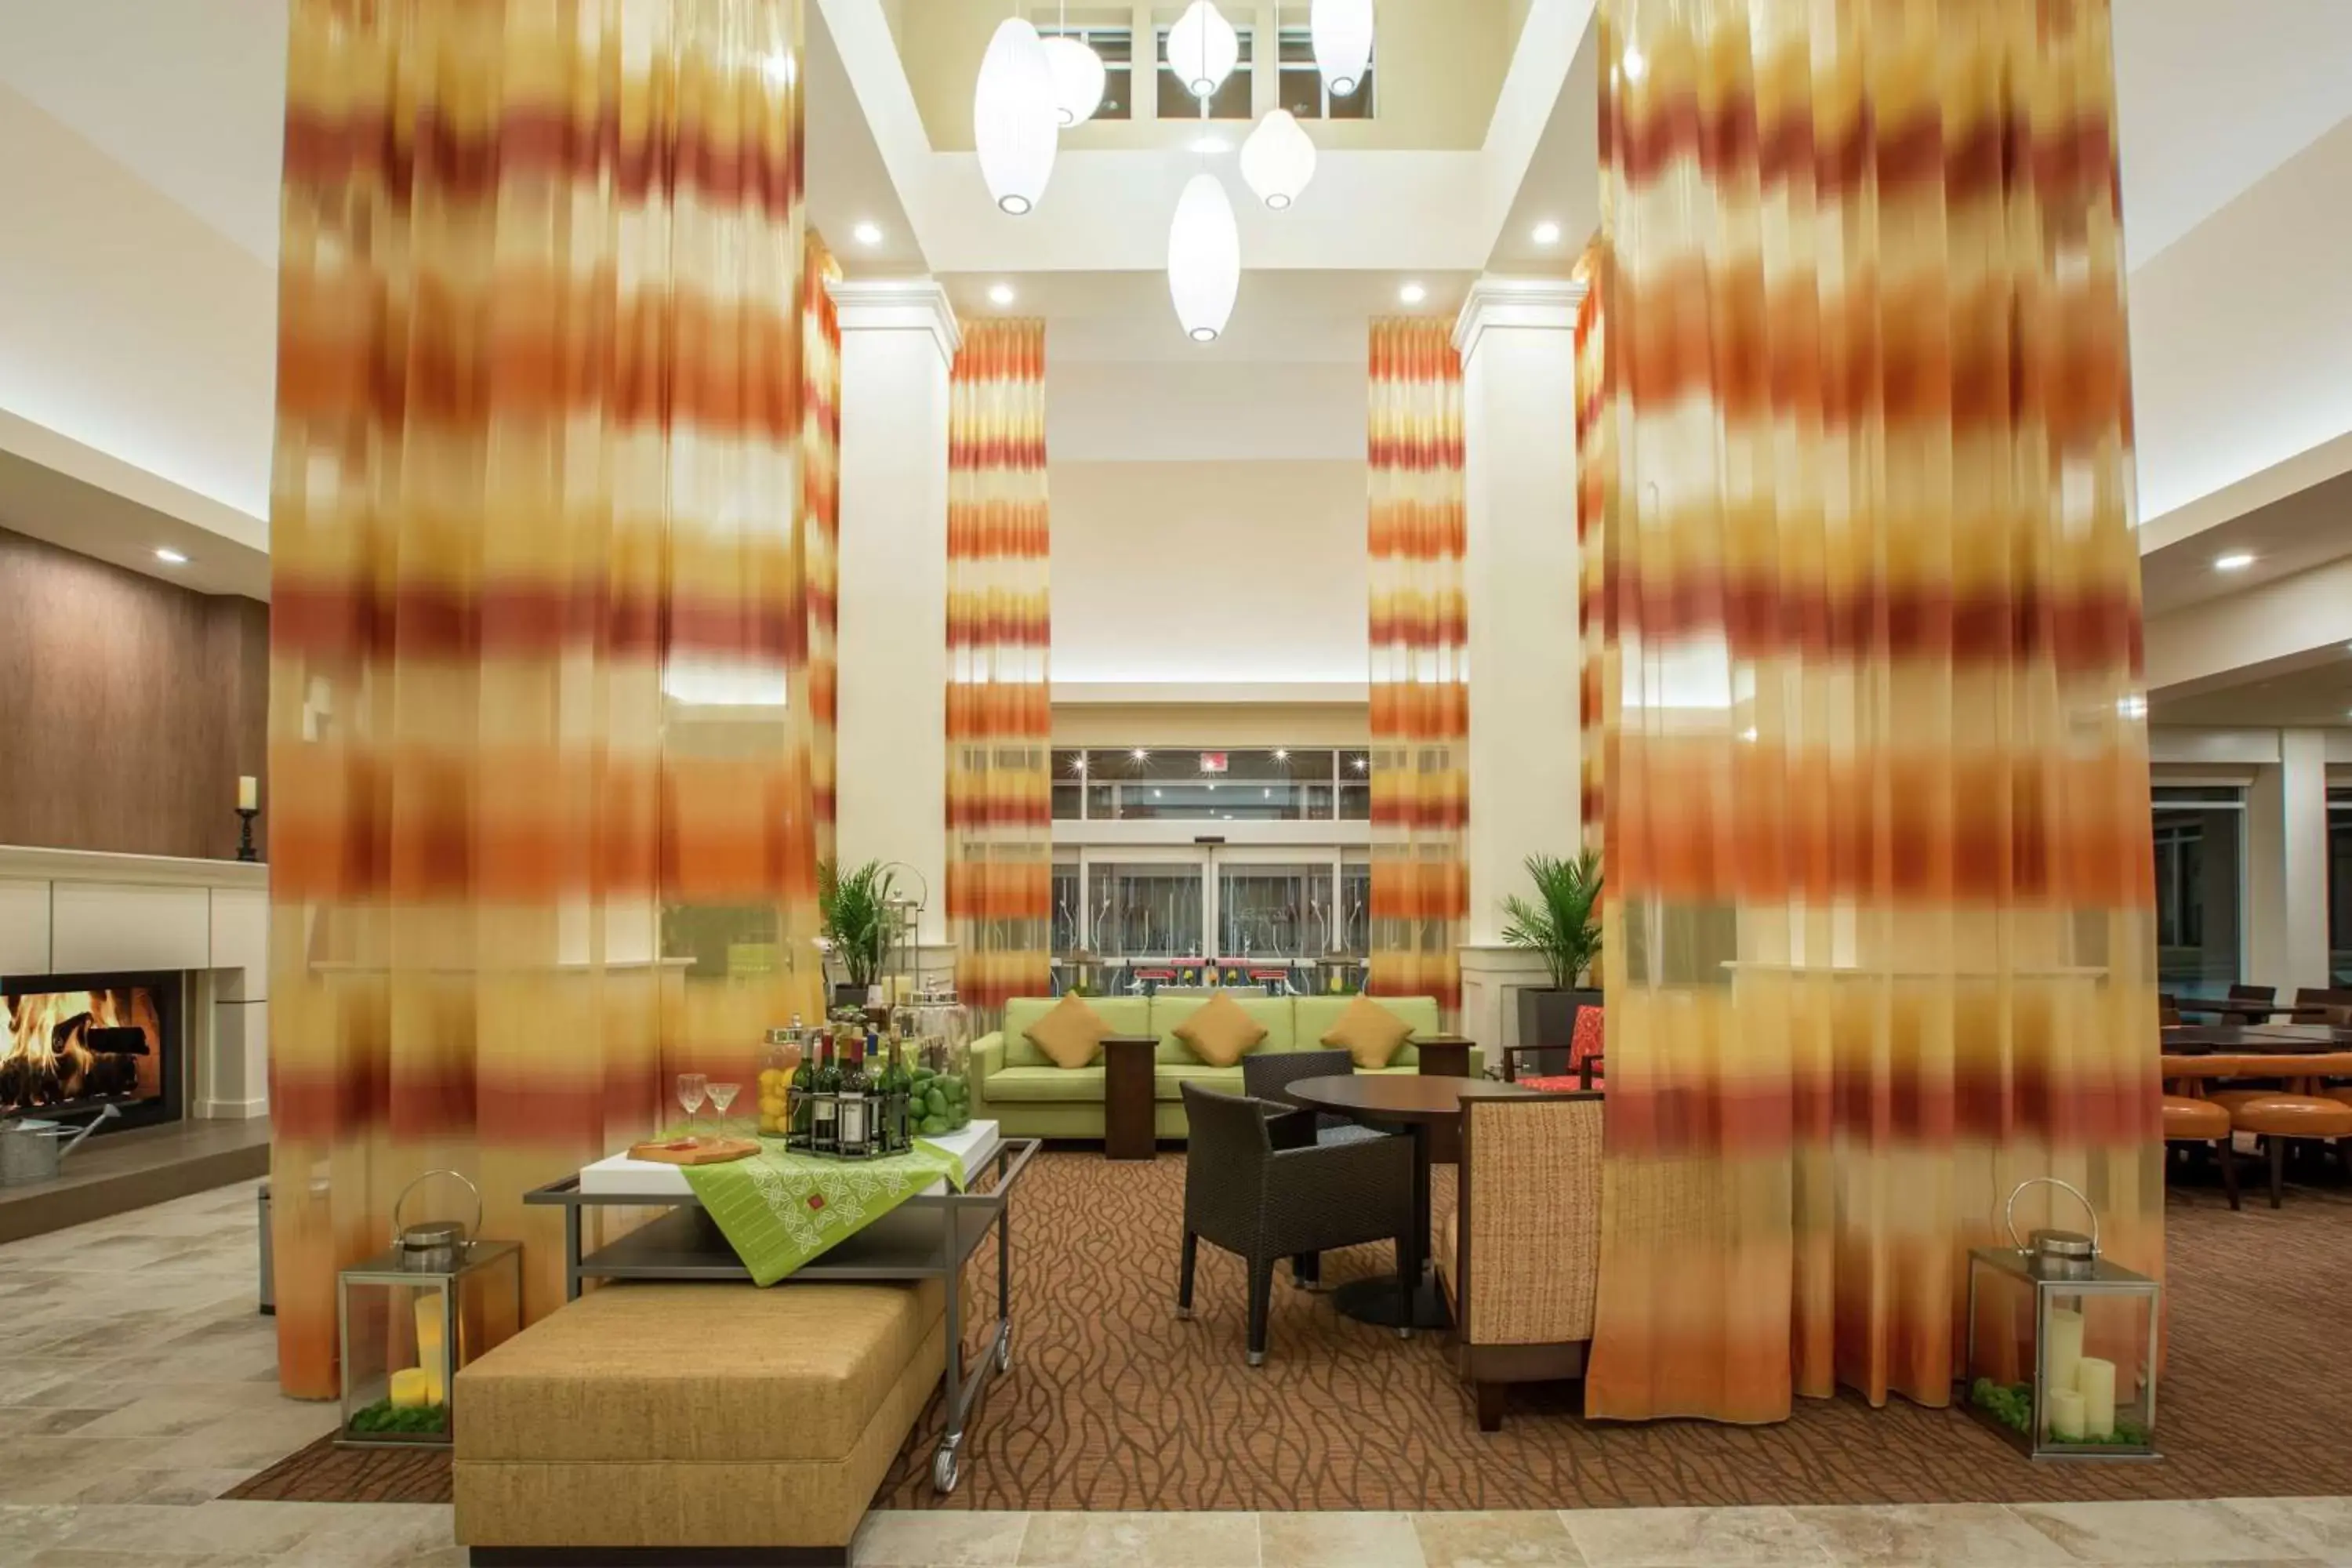 Lobby or reception, Lobby/Reception in Hilton Garden Inn Olympia, WA